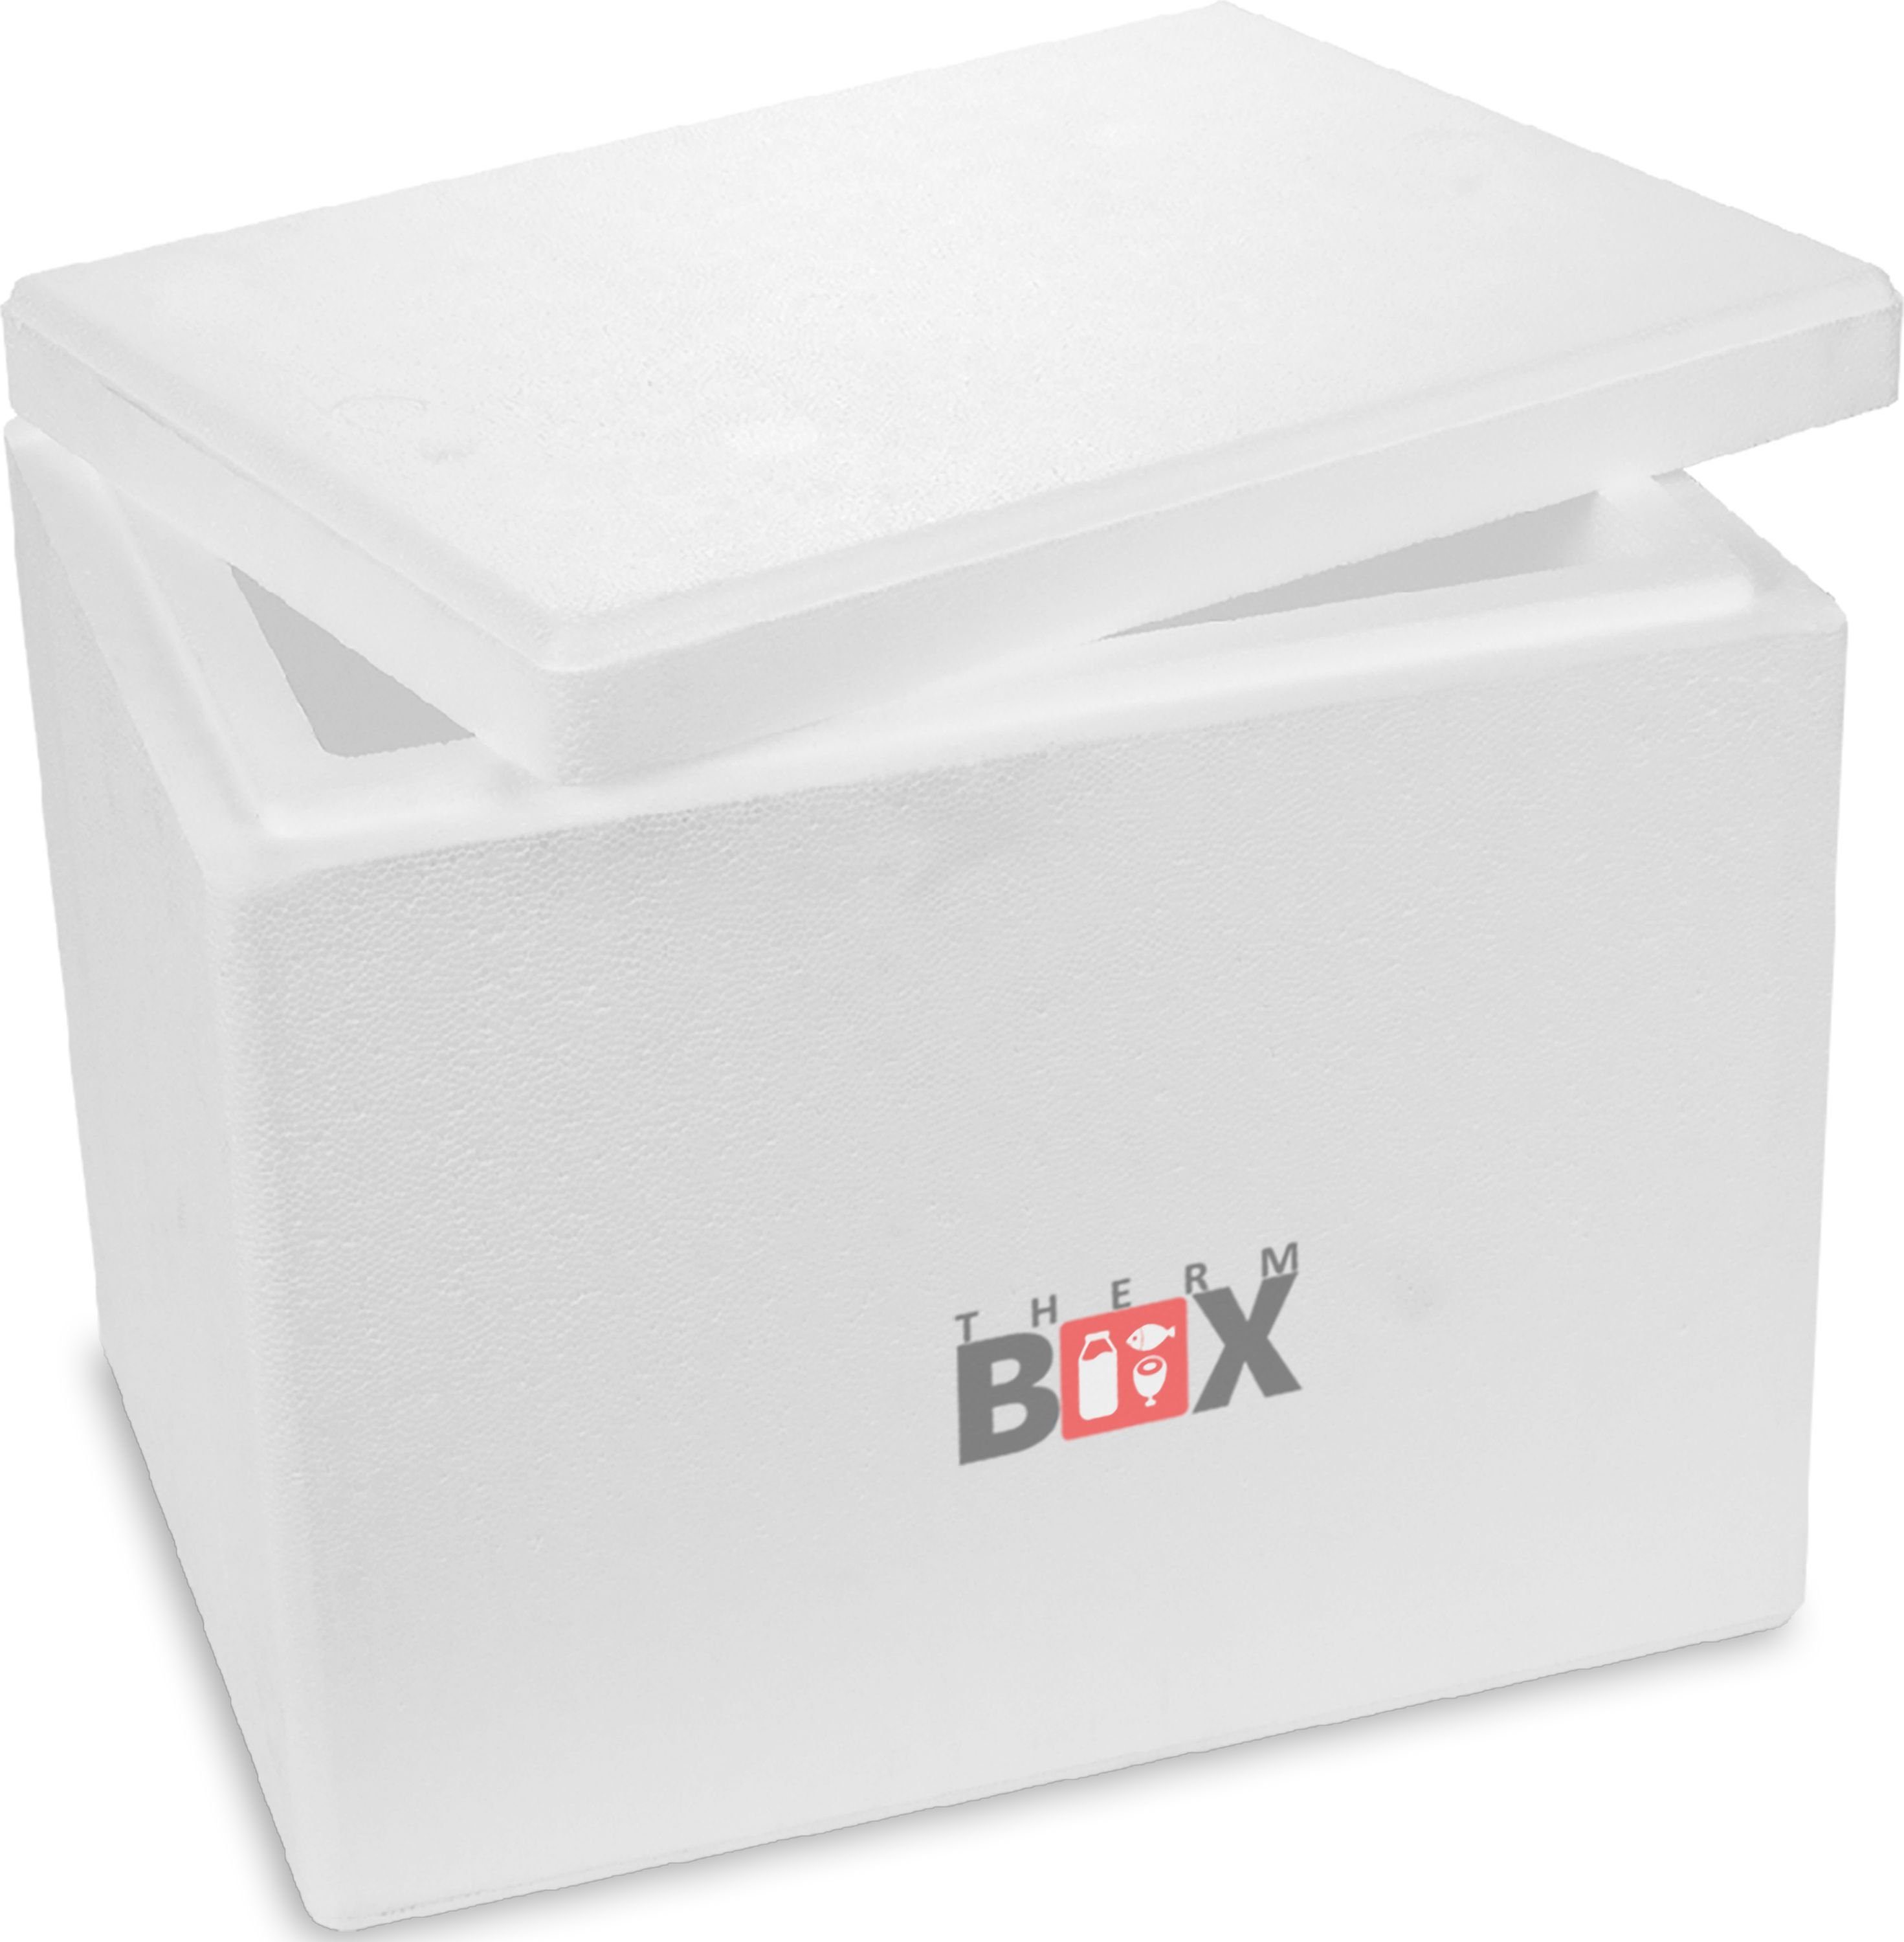 Styroporbox (1, Innen: THERM-BOX Box im Liter, Isolierbox Warmhaltebox Wiederverwendbar 27,9 37x26x29cm 0-tlg., mit Thermobox Deckel Karton), 27W 4cm Wand: Thermobehälter Styropor-Verdichtet, Kühlbox